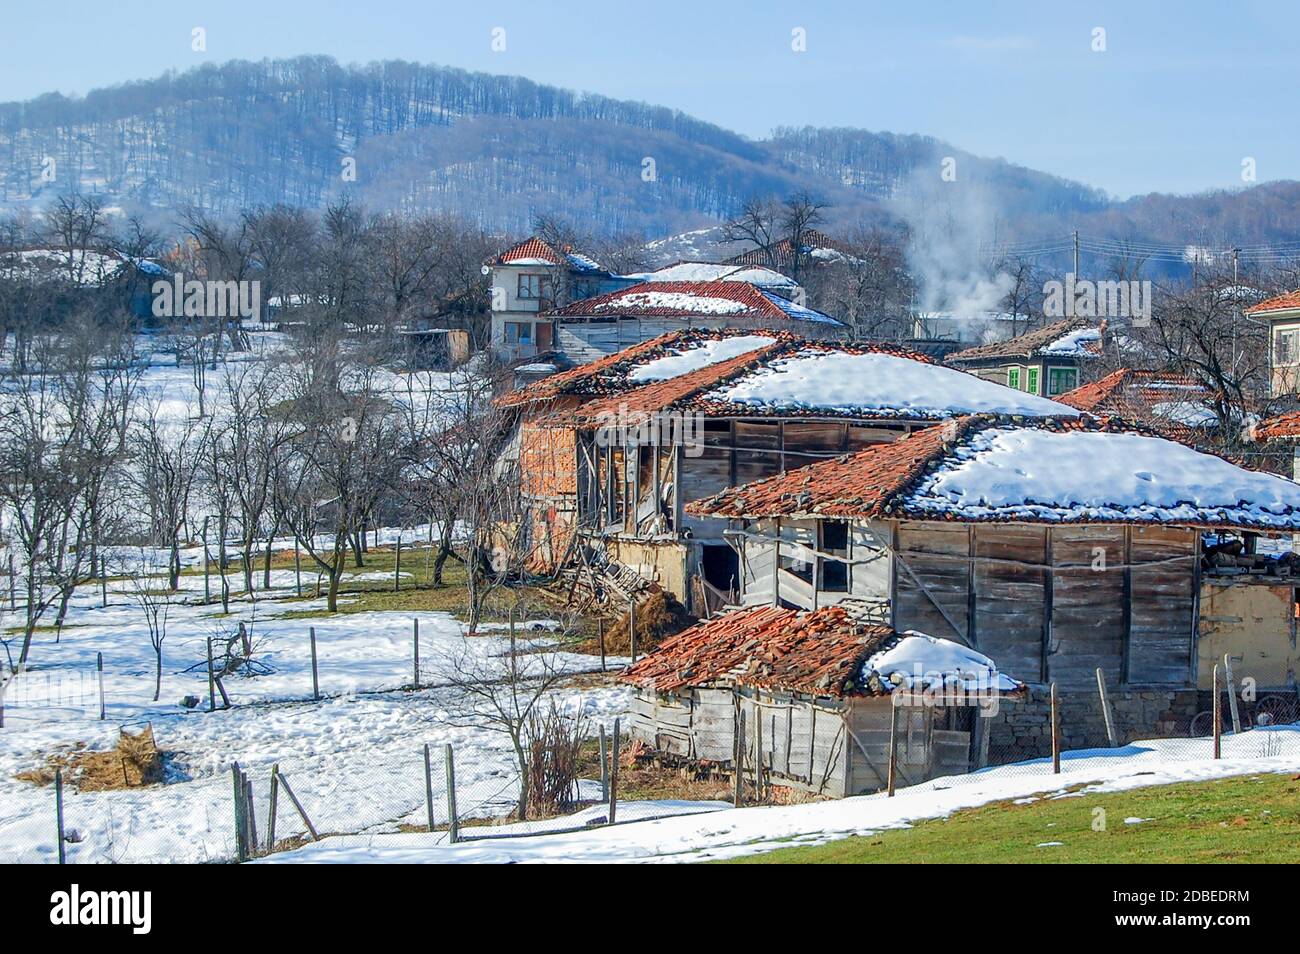 Paesaggio invernale in un povero villaggio di montagna, neve su tetti di case fatiscenti Foto Stock